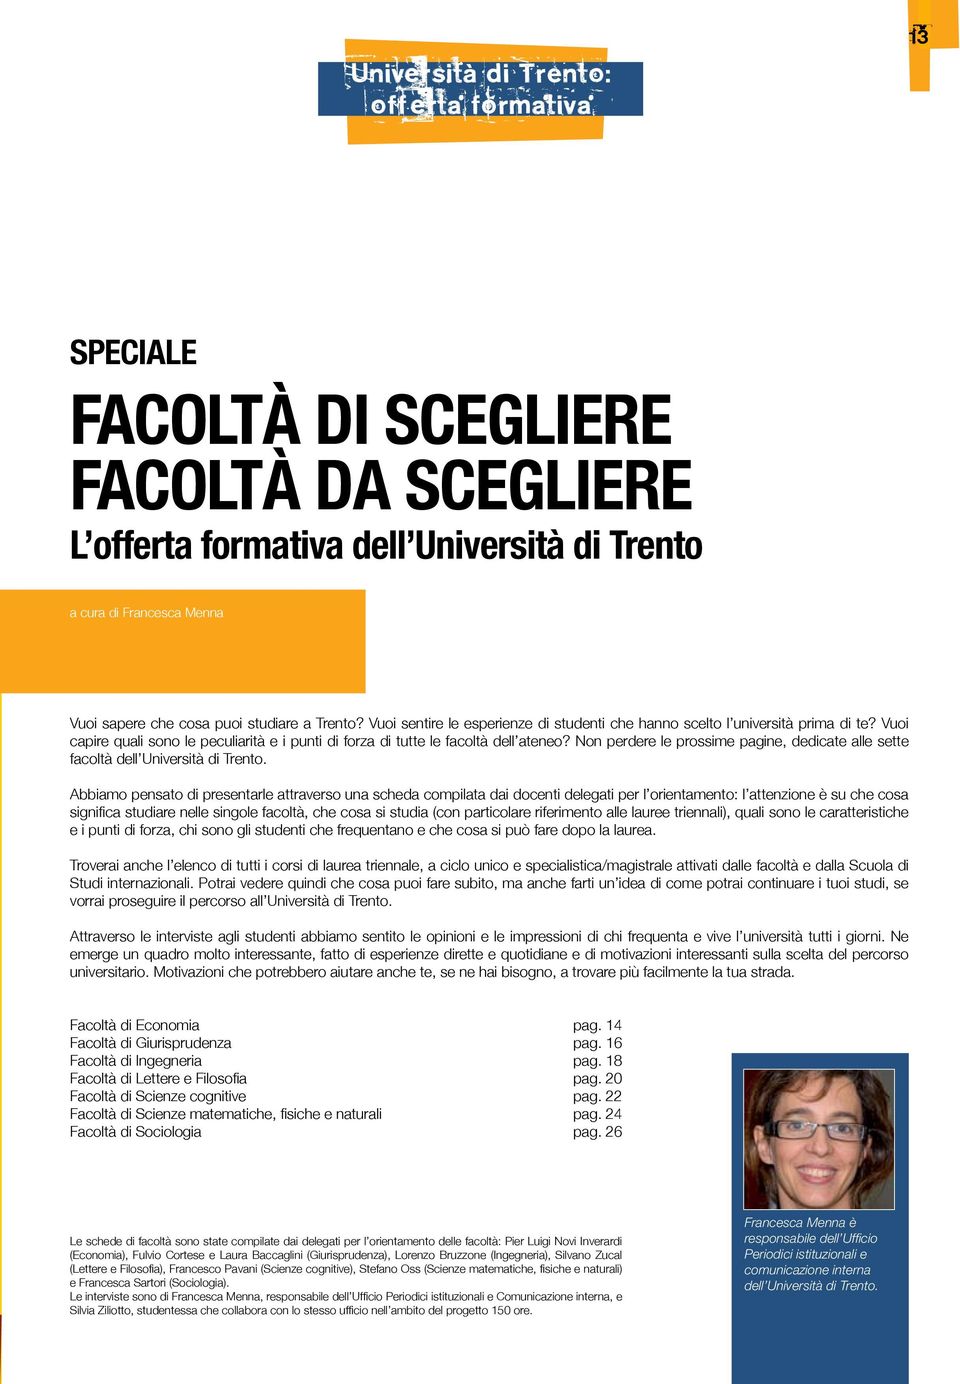 Non perdere le prossime pagine, dedicate alle sette facoltà dell Università di Trento.